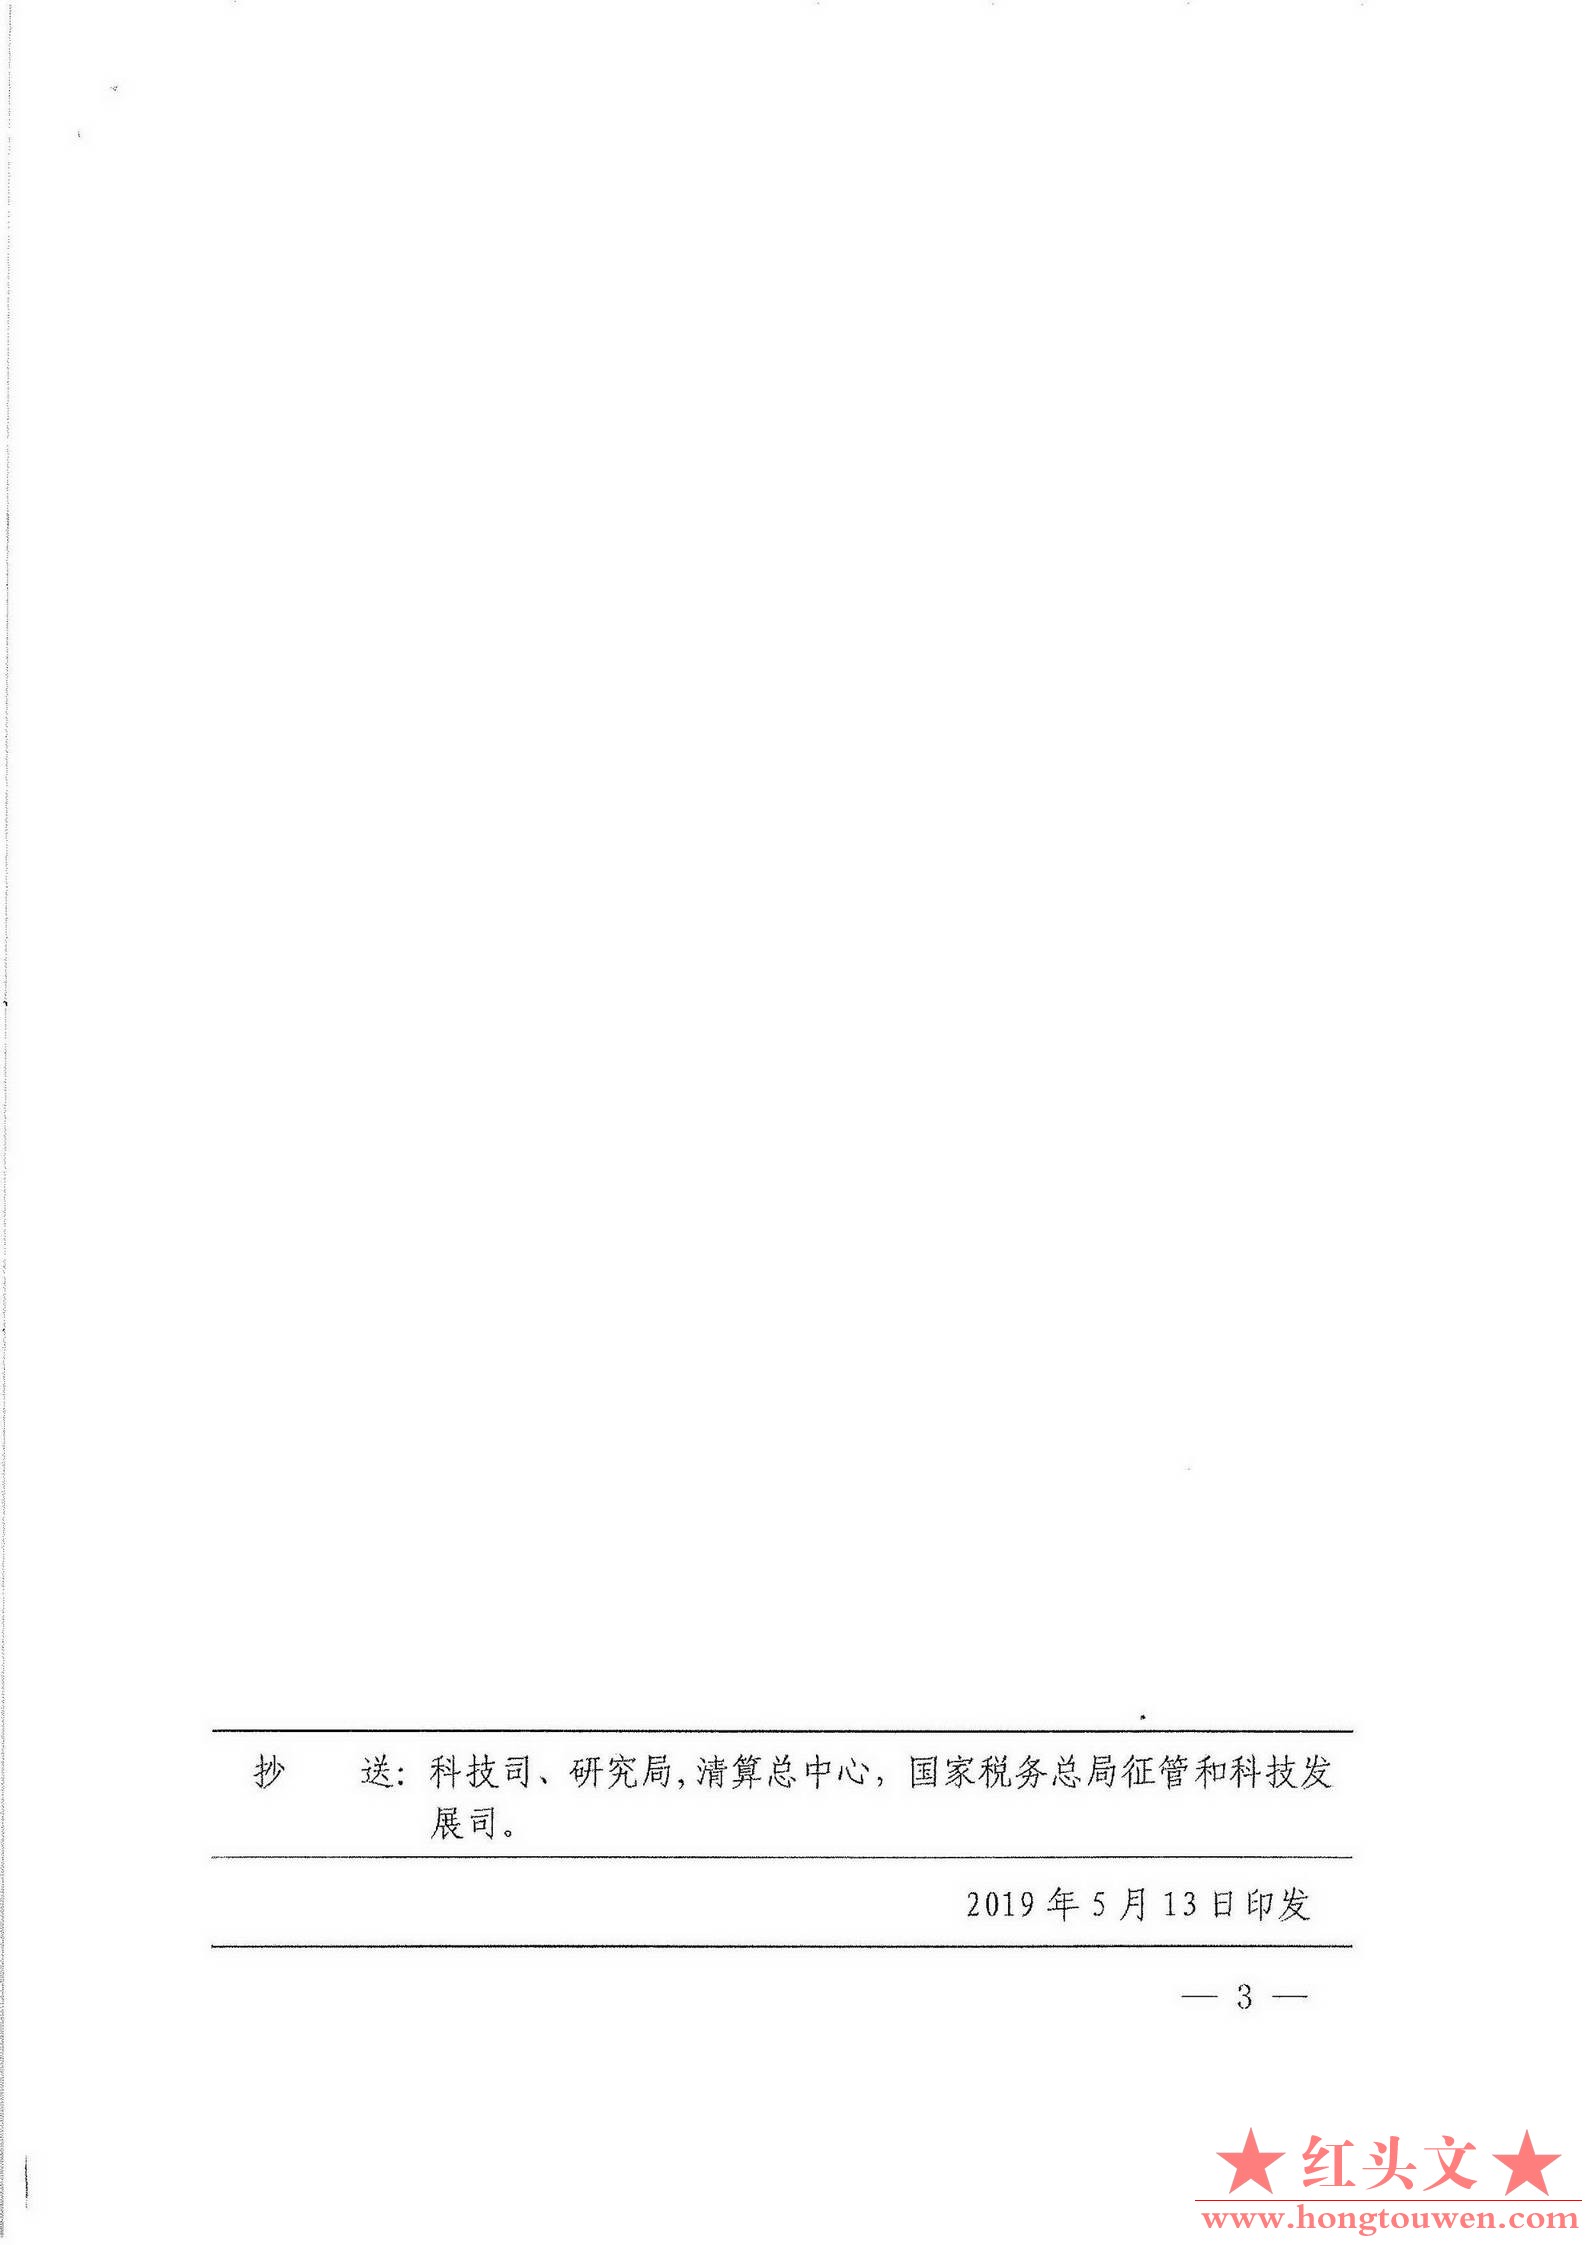 银支付[2019]88号-中国人民银行支付结算司关于支持国家税务总局通过小额支付系统核验.jpg